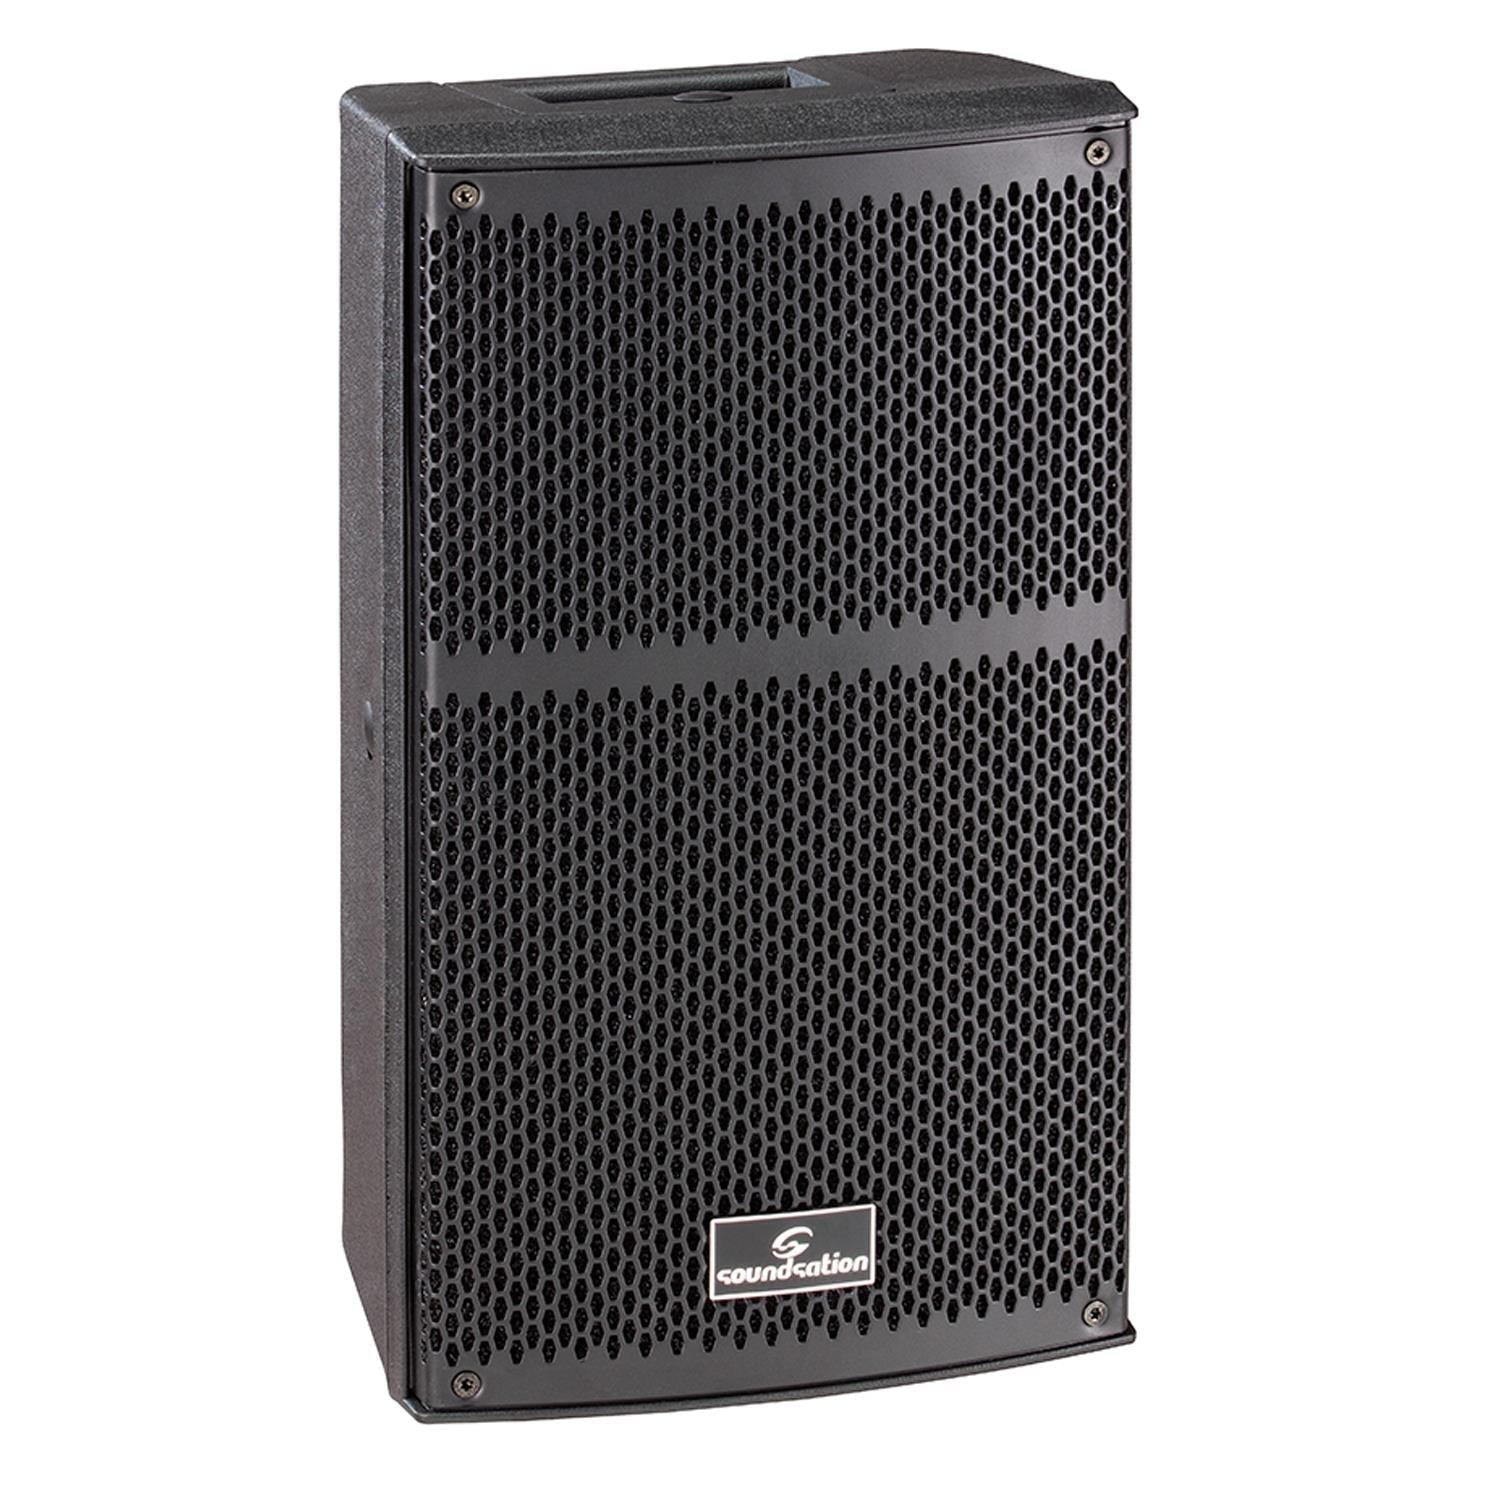 Soundsation Hyper Top 8a 480w 8" Active Speaker - DY Pro Audio